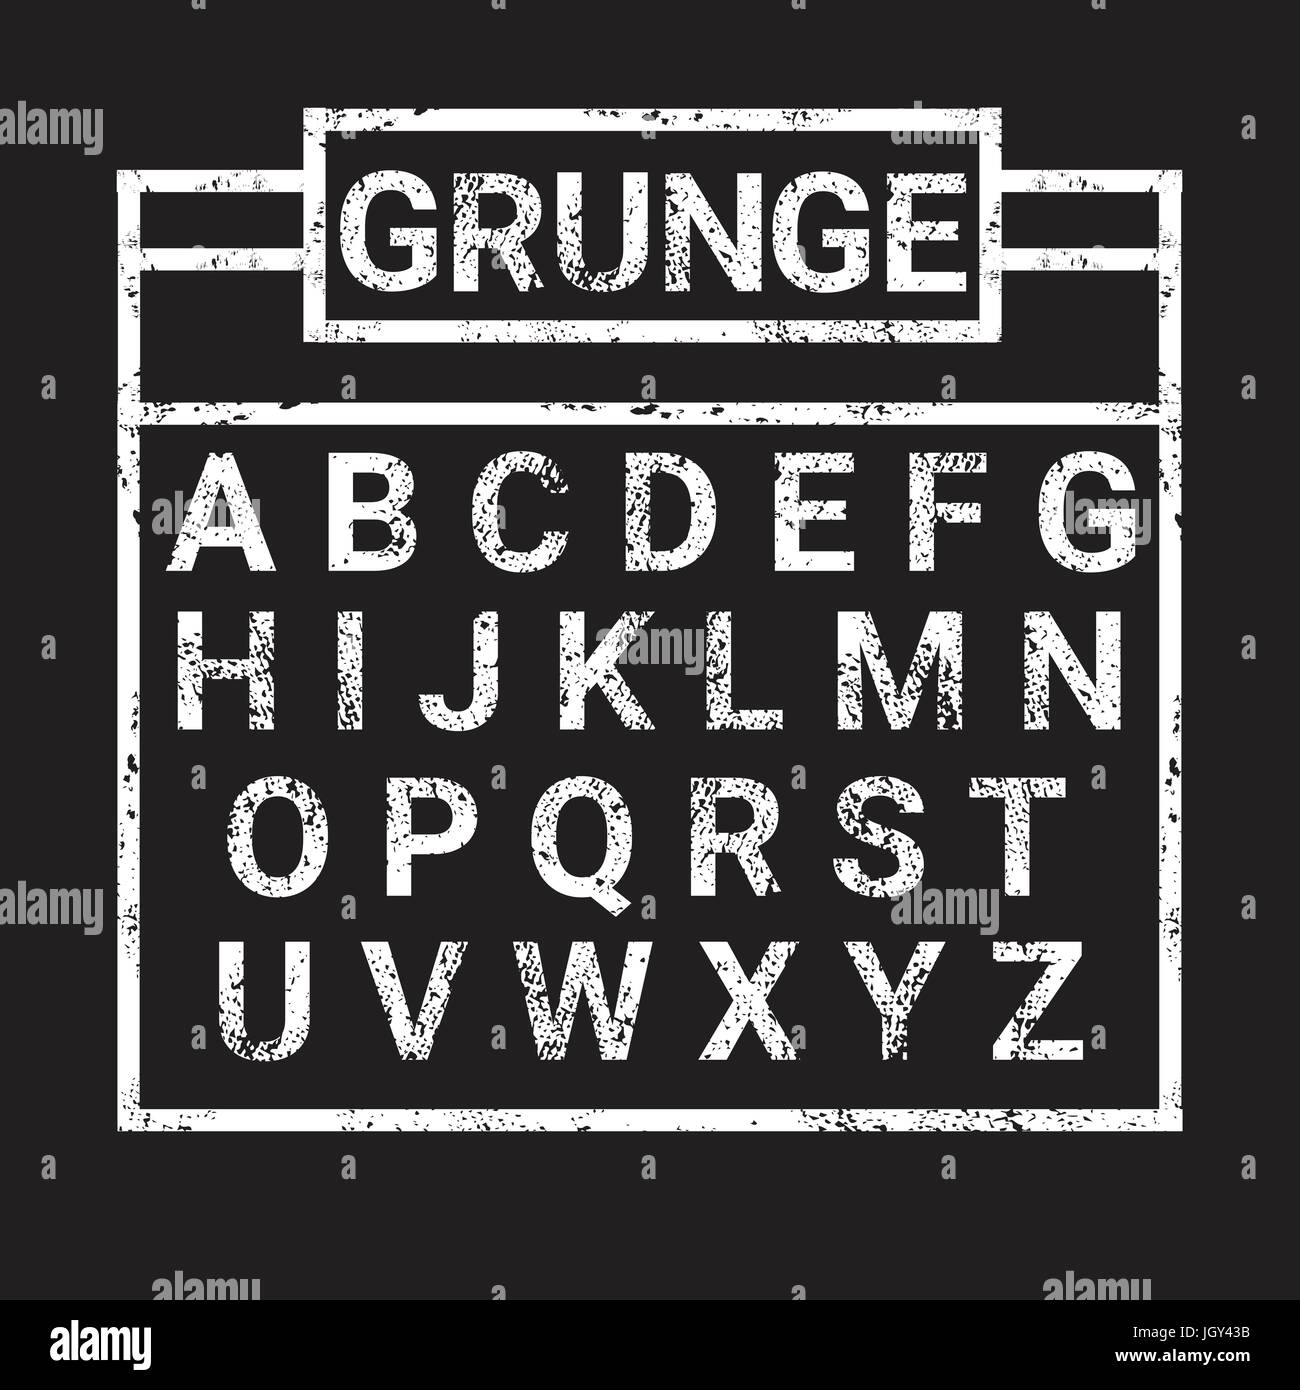 Alfabeto Grunge raccolta di lettere scritte di testo impostato Illustrazione Vettoriale